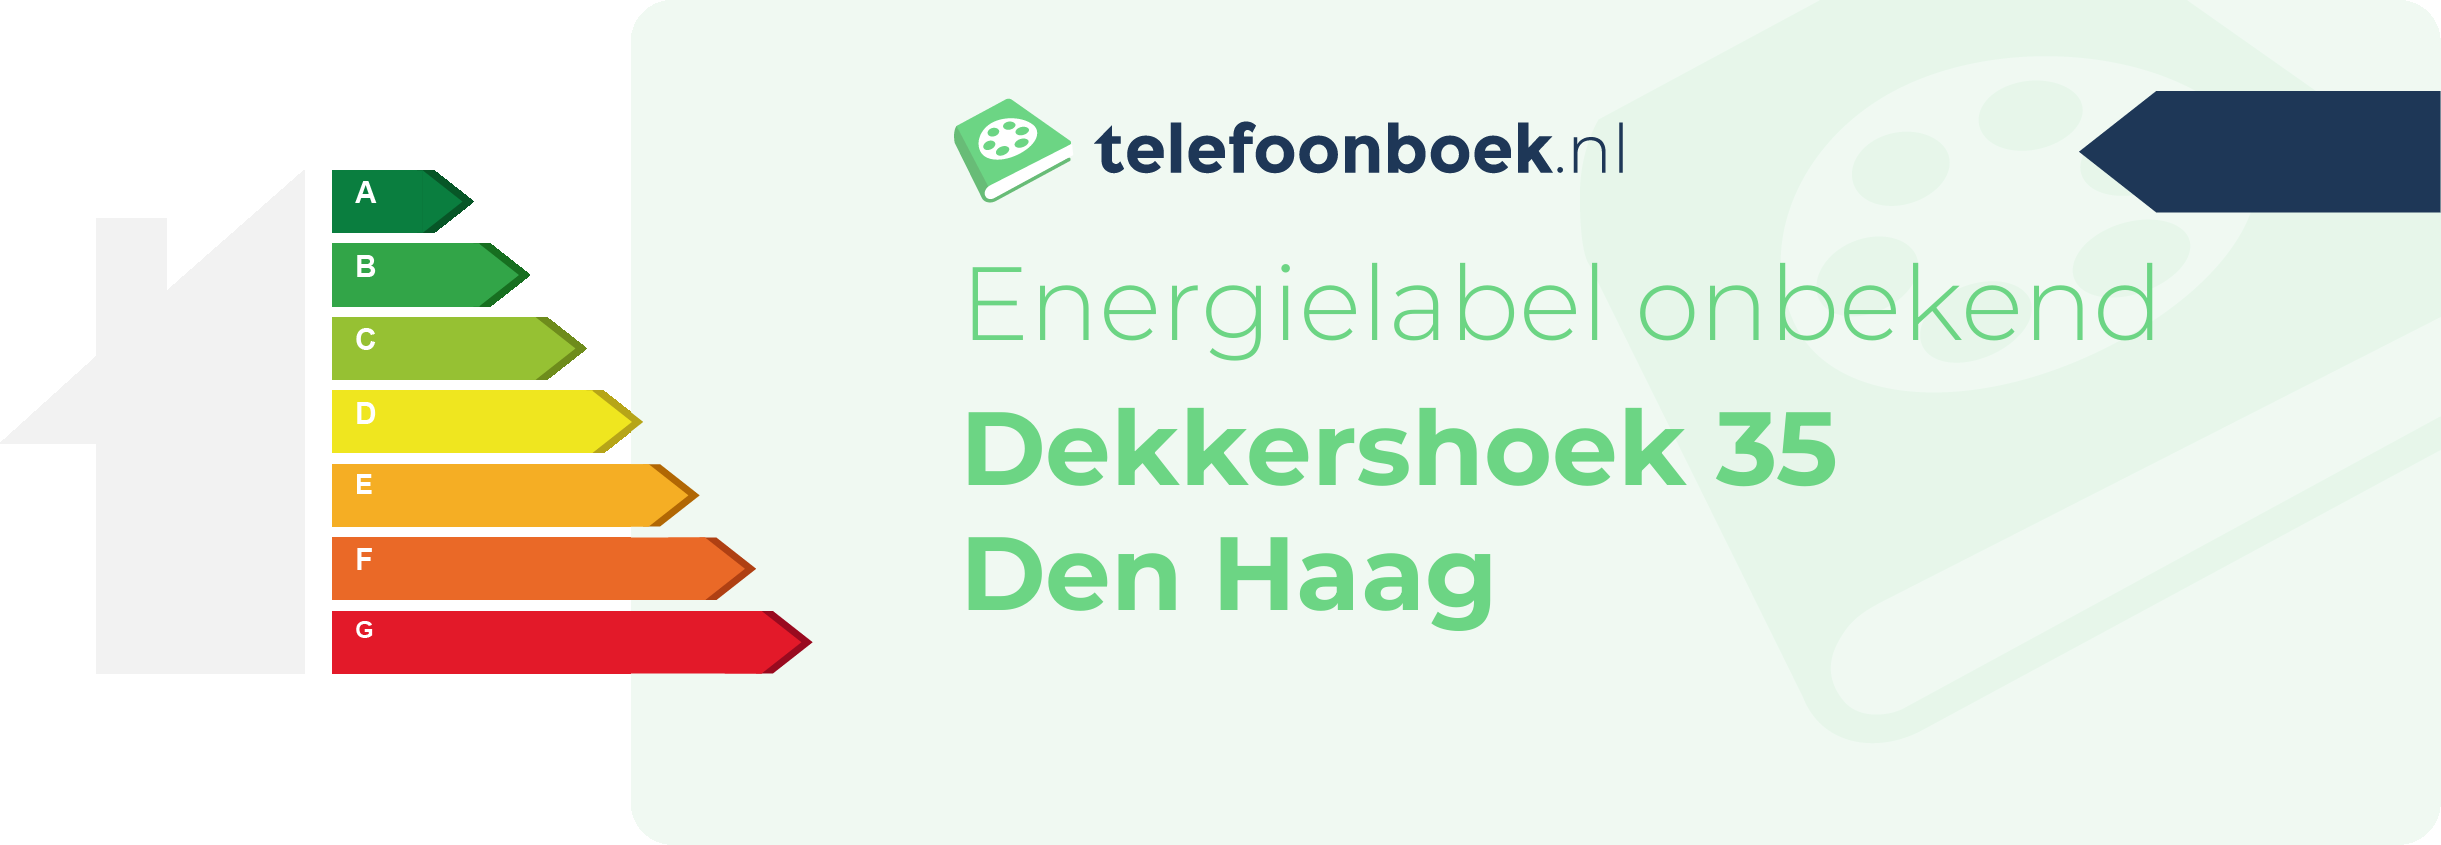 Energielabel Dekkershoek 35 Den Haag